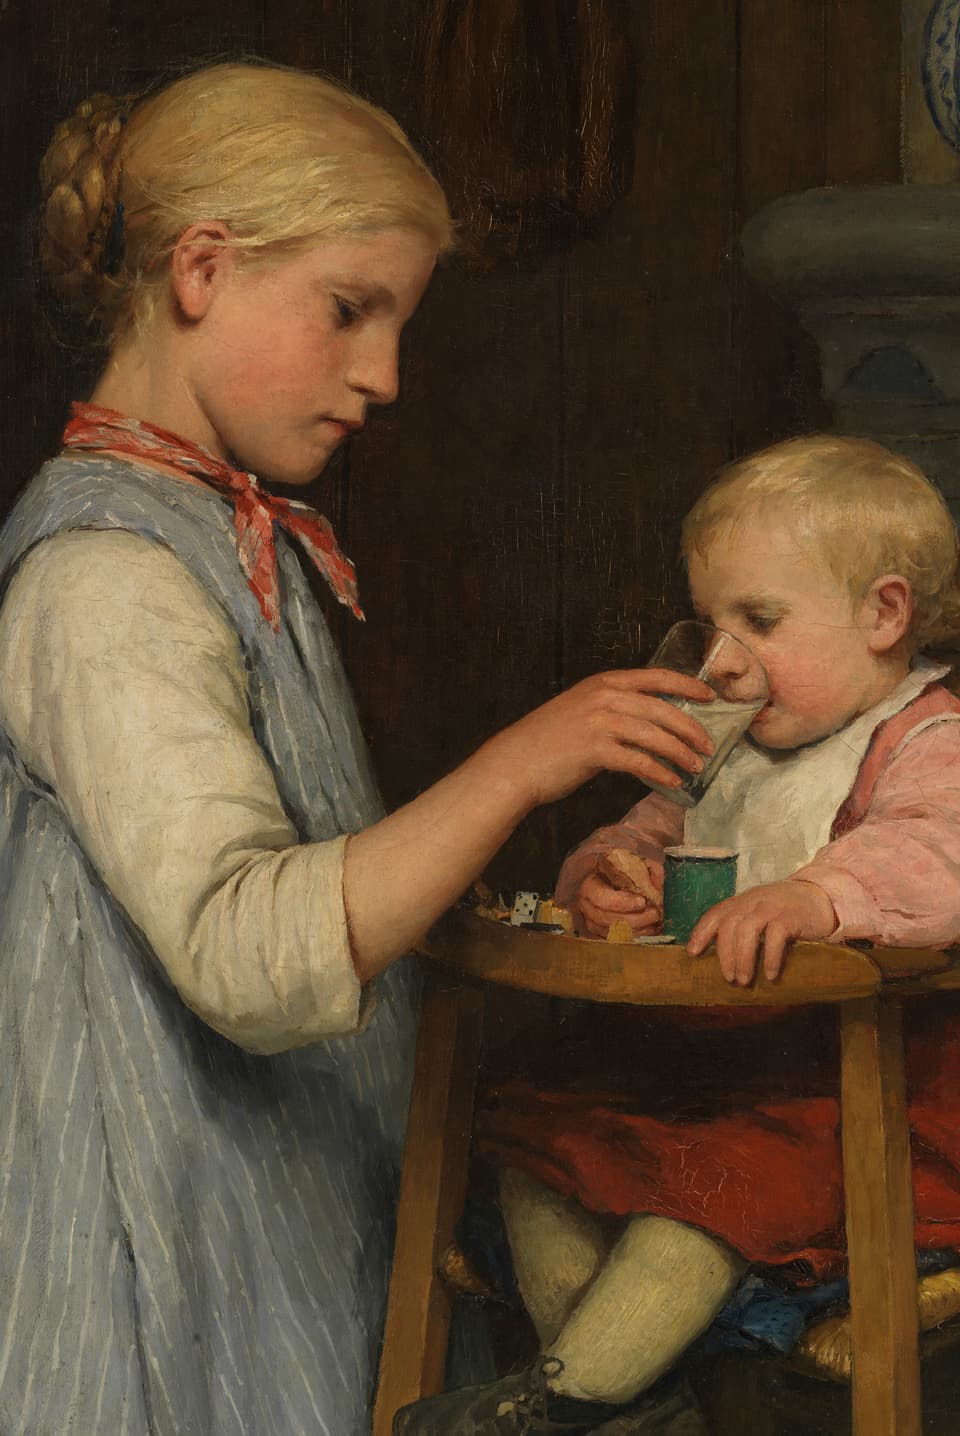 Ein Gemälde von Albert Anker: Ein Mädchen gibt einem kleinen Kind mit einem Glas Milch zu trinken.